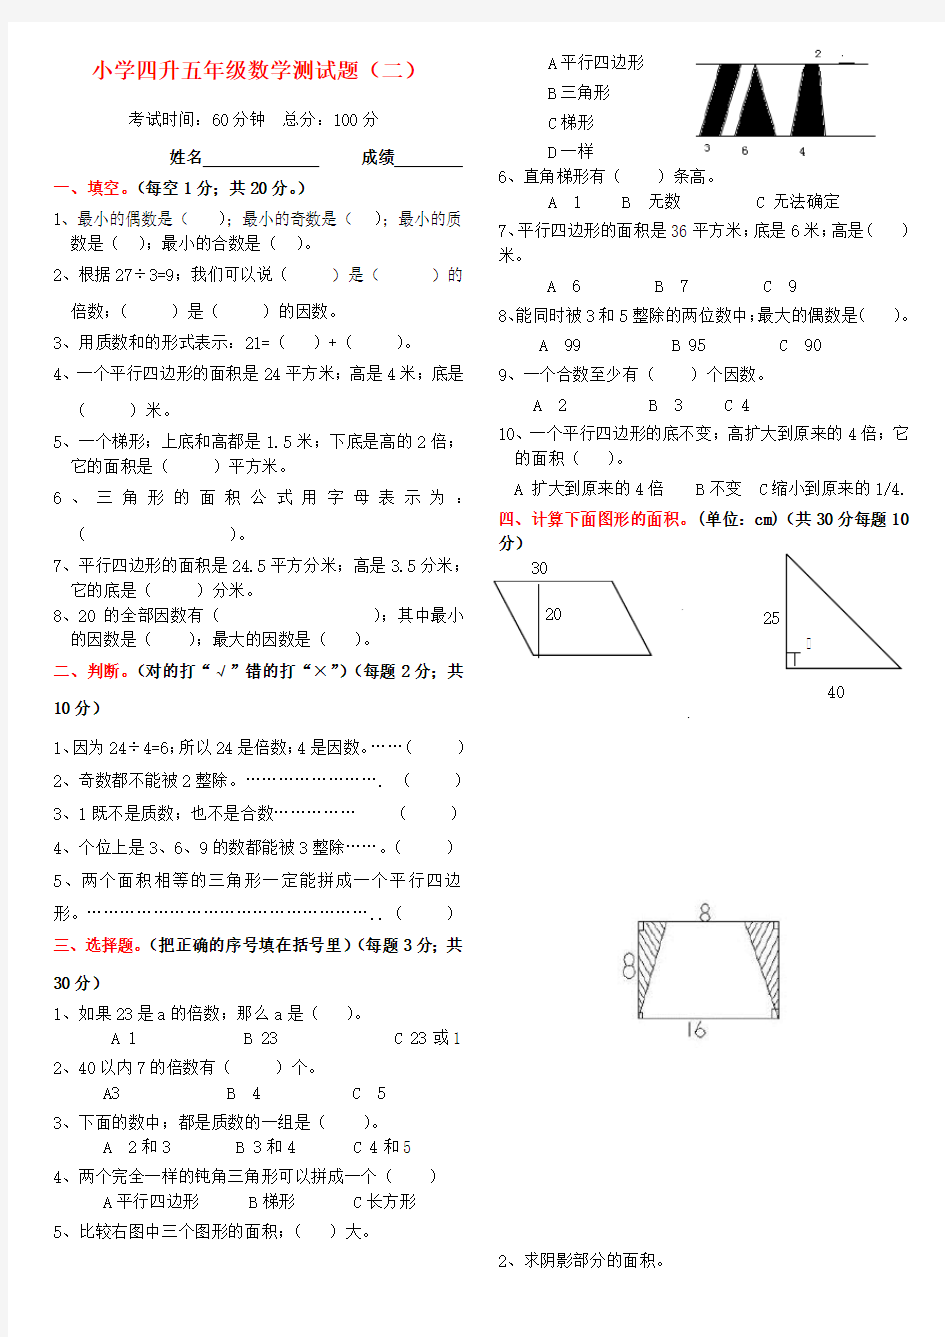 【小学数学】四年级升五年级数学衔接试卷(附答案)